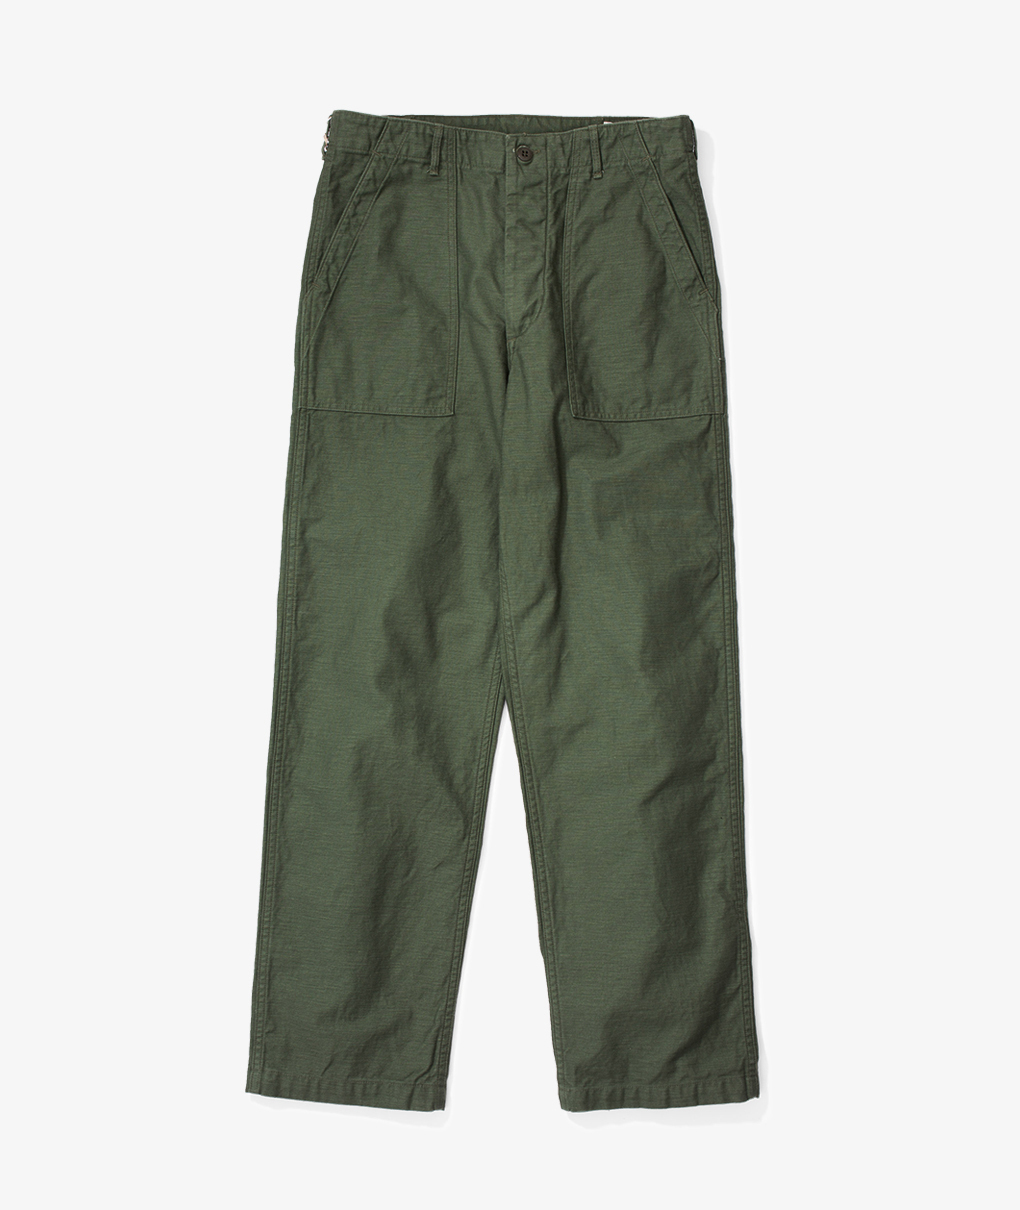 Regular Fit Fatigue Pants - Green